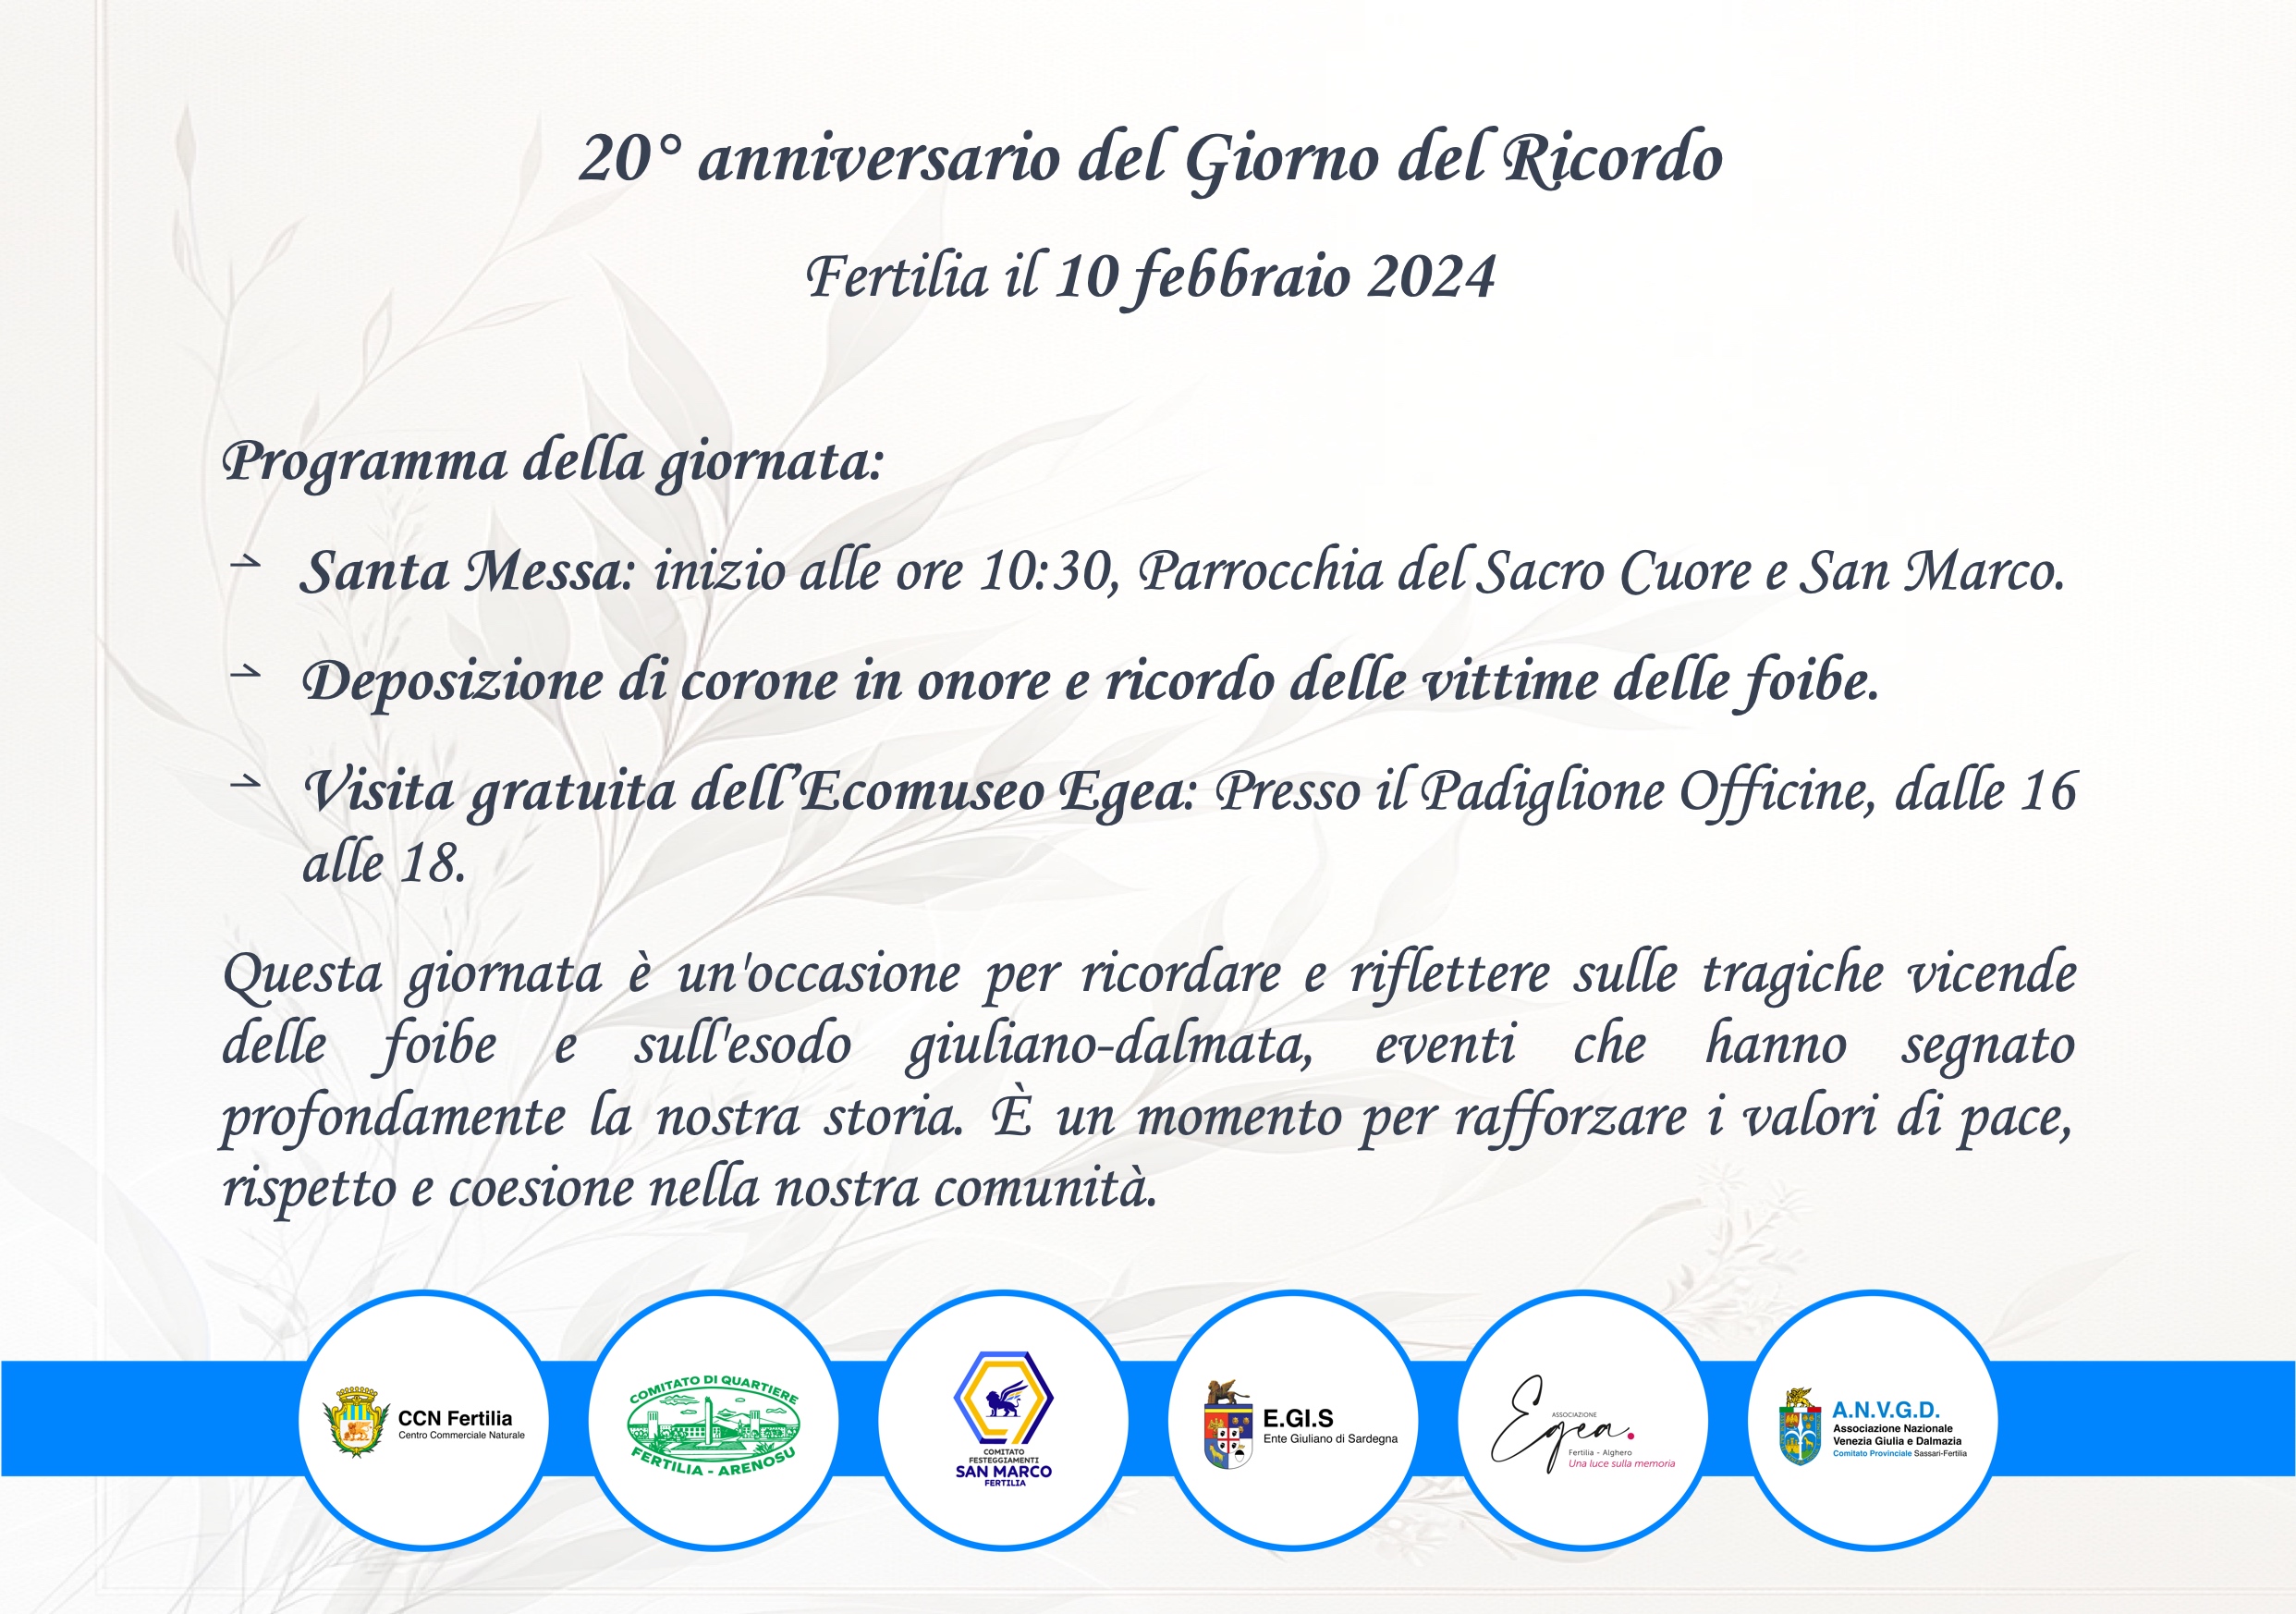 "Commemorazione e Riflessione: 20° Anniversario del Giorno del Ricordo a Fertilia"